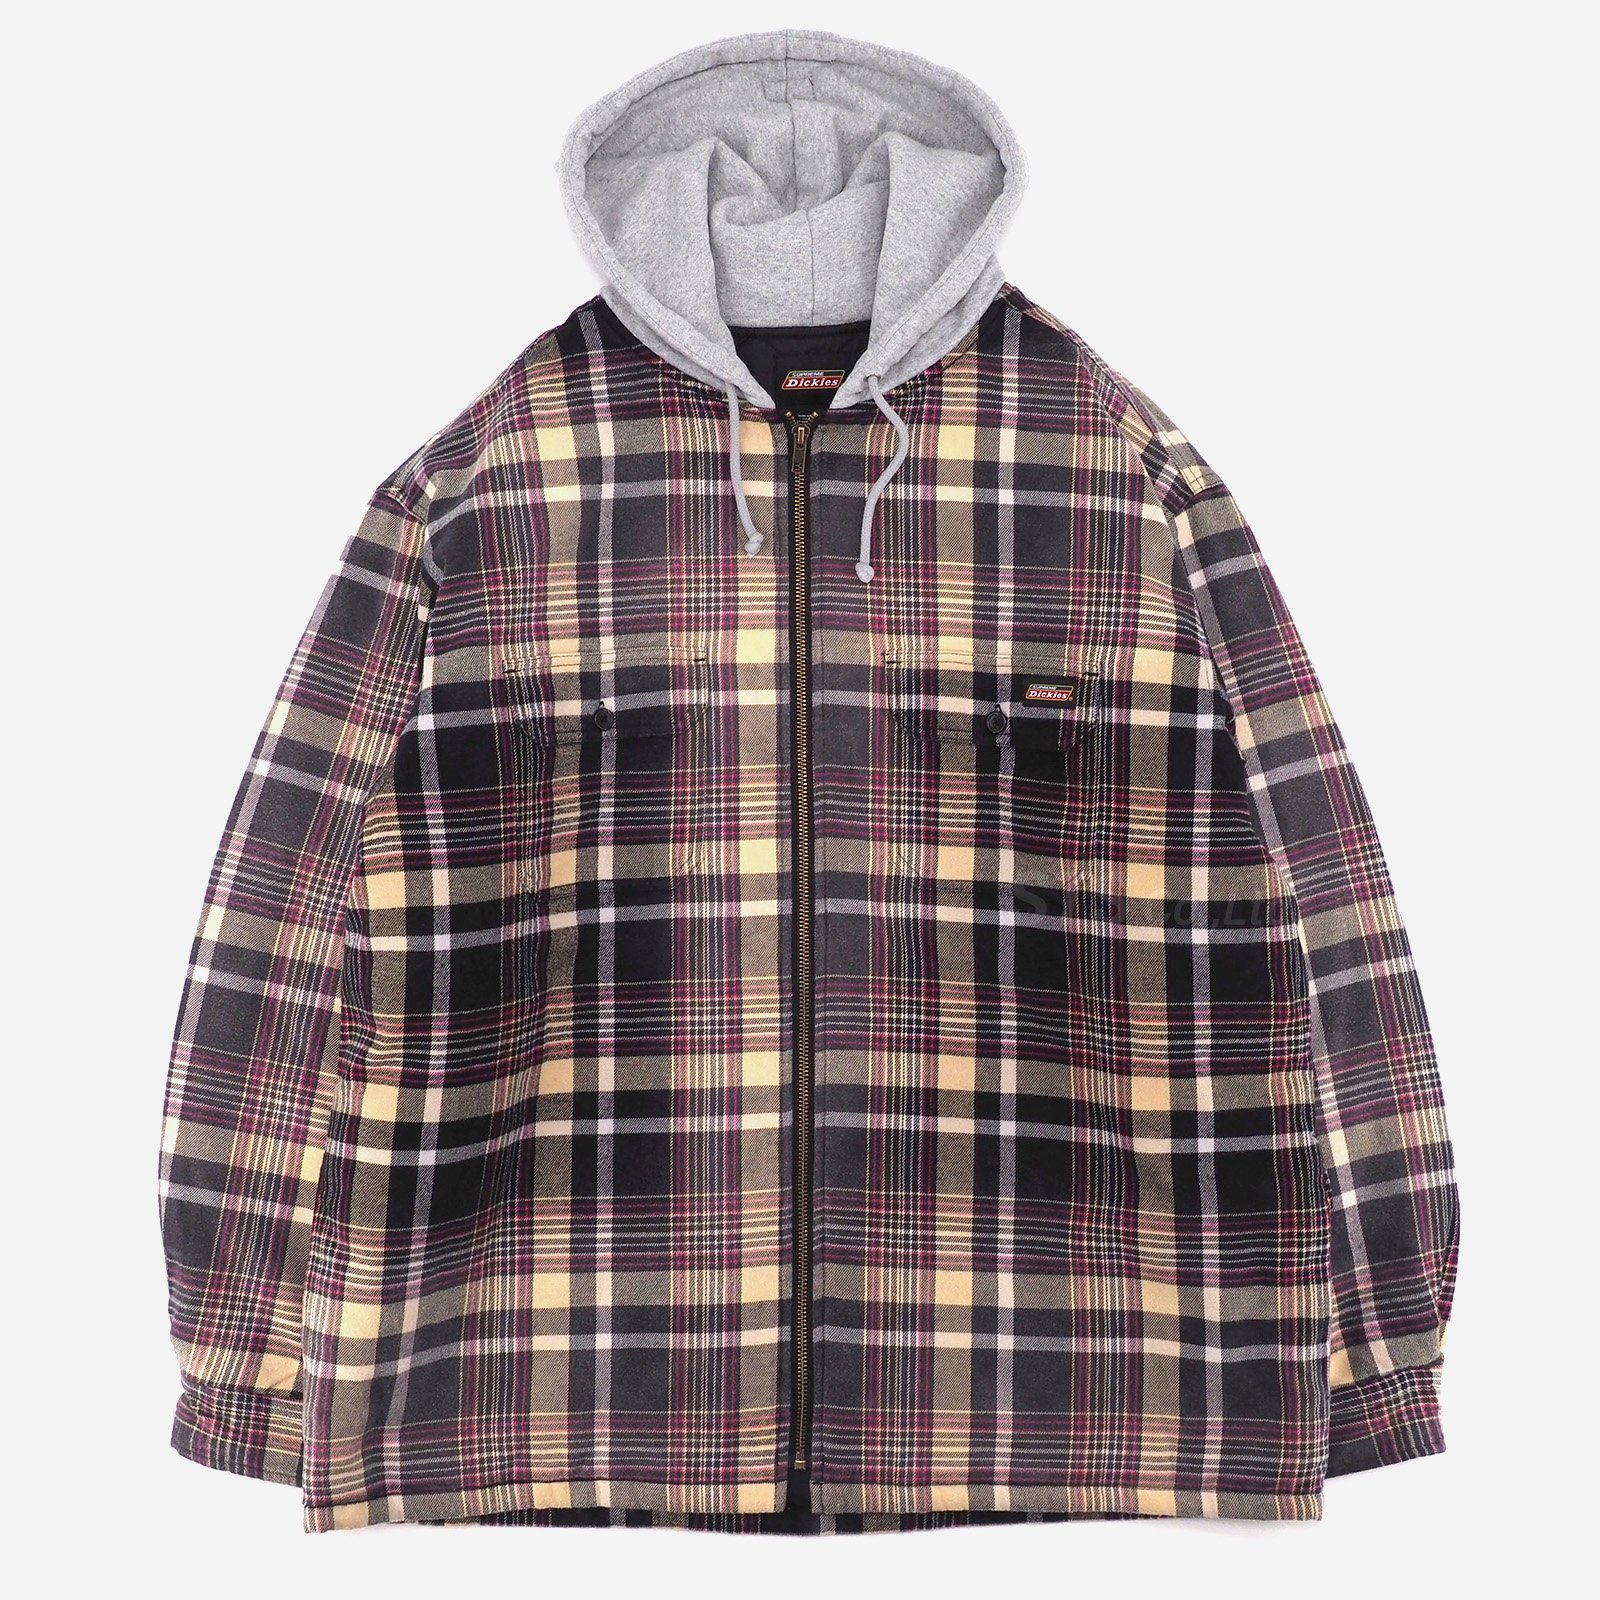 15,750円supreme dickies plaid hooded zipup shirt